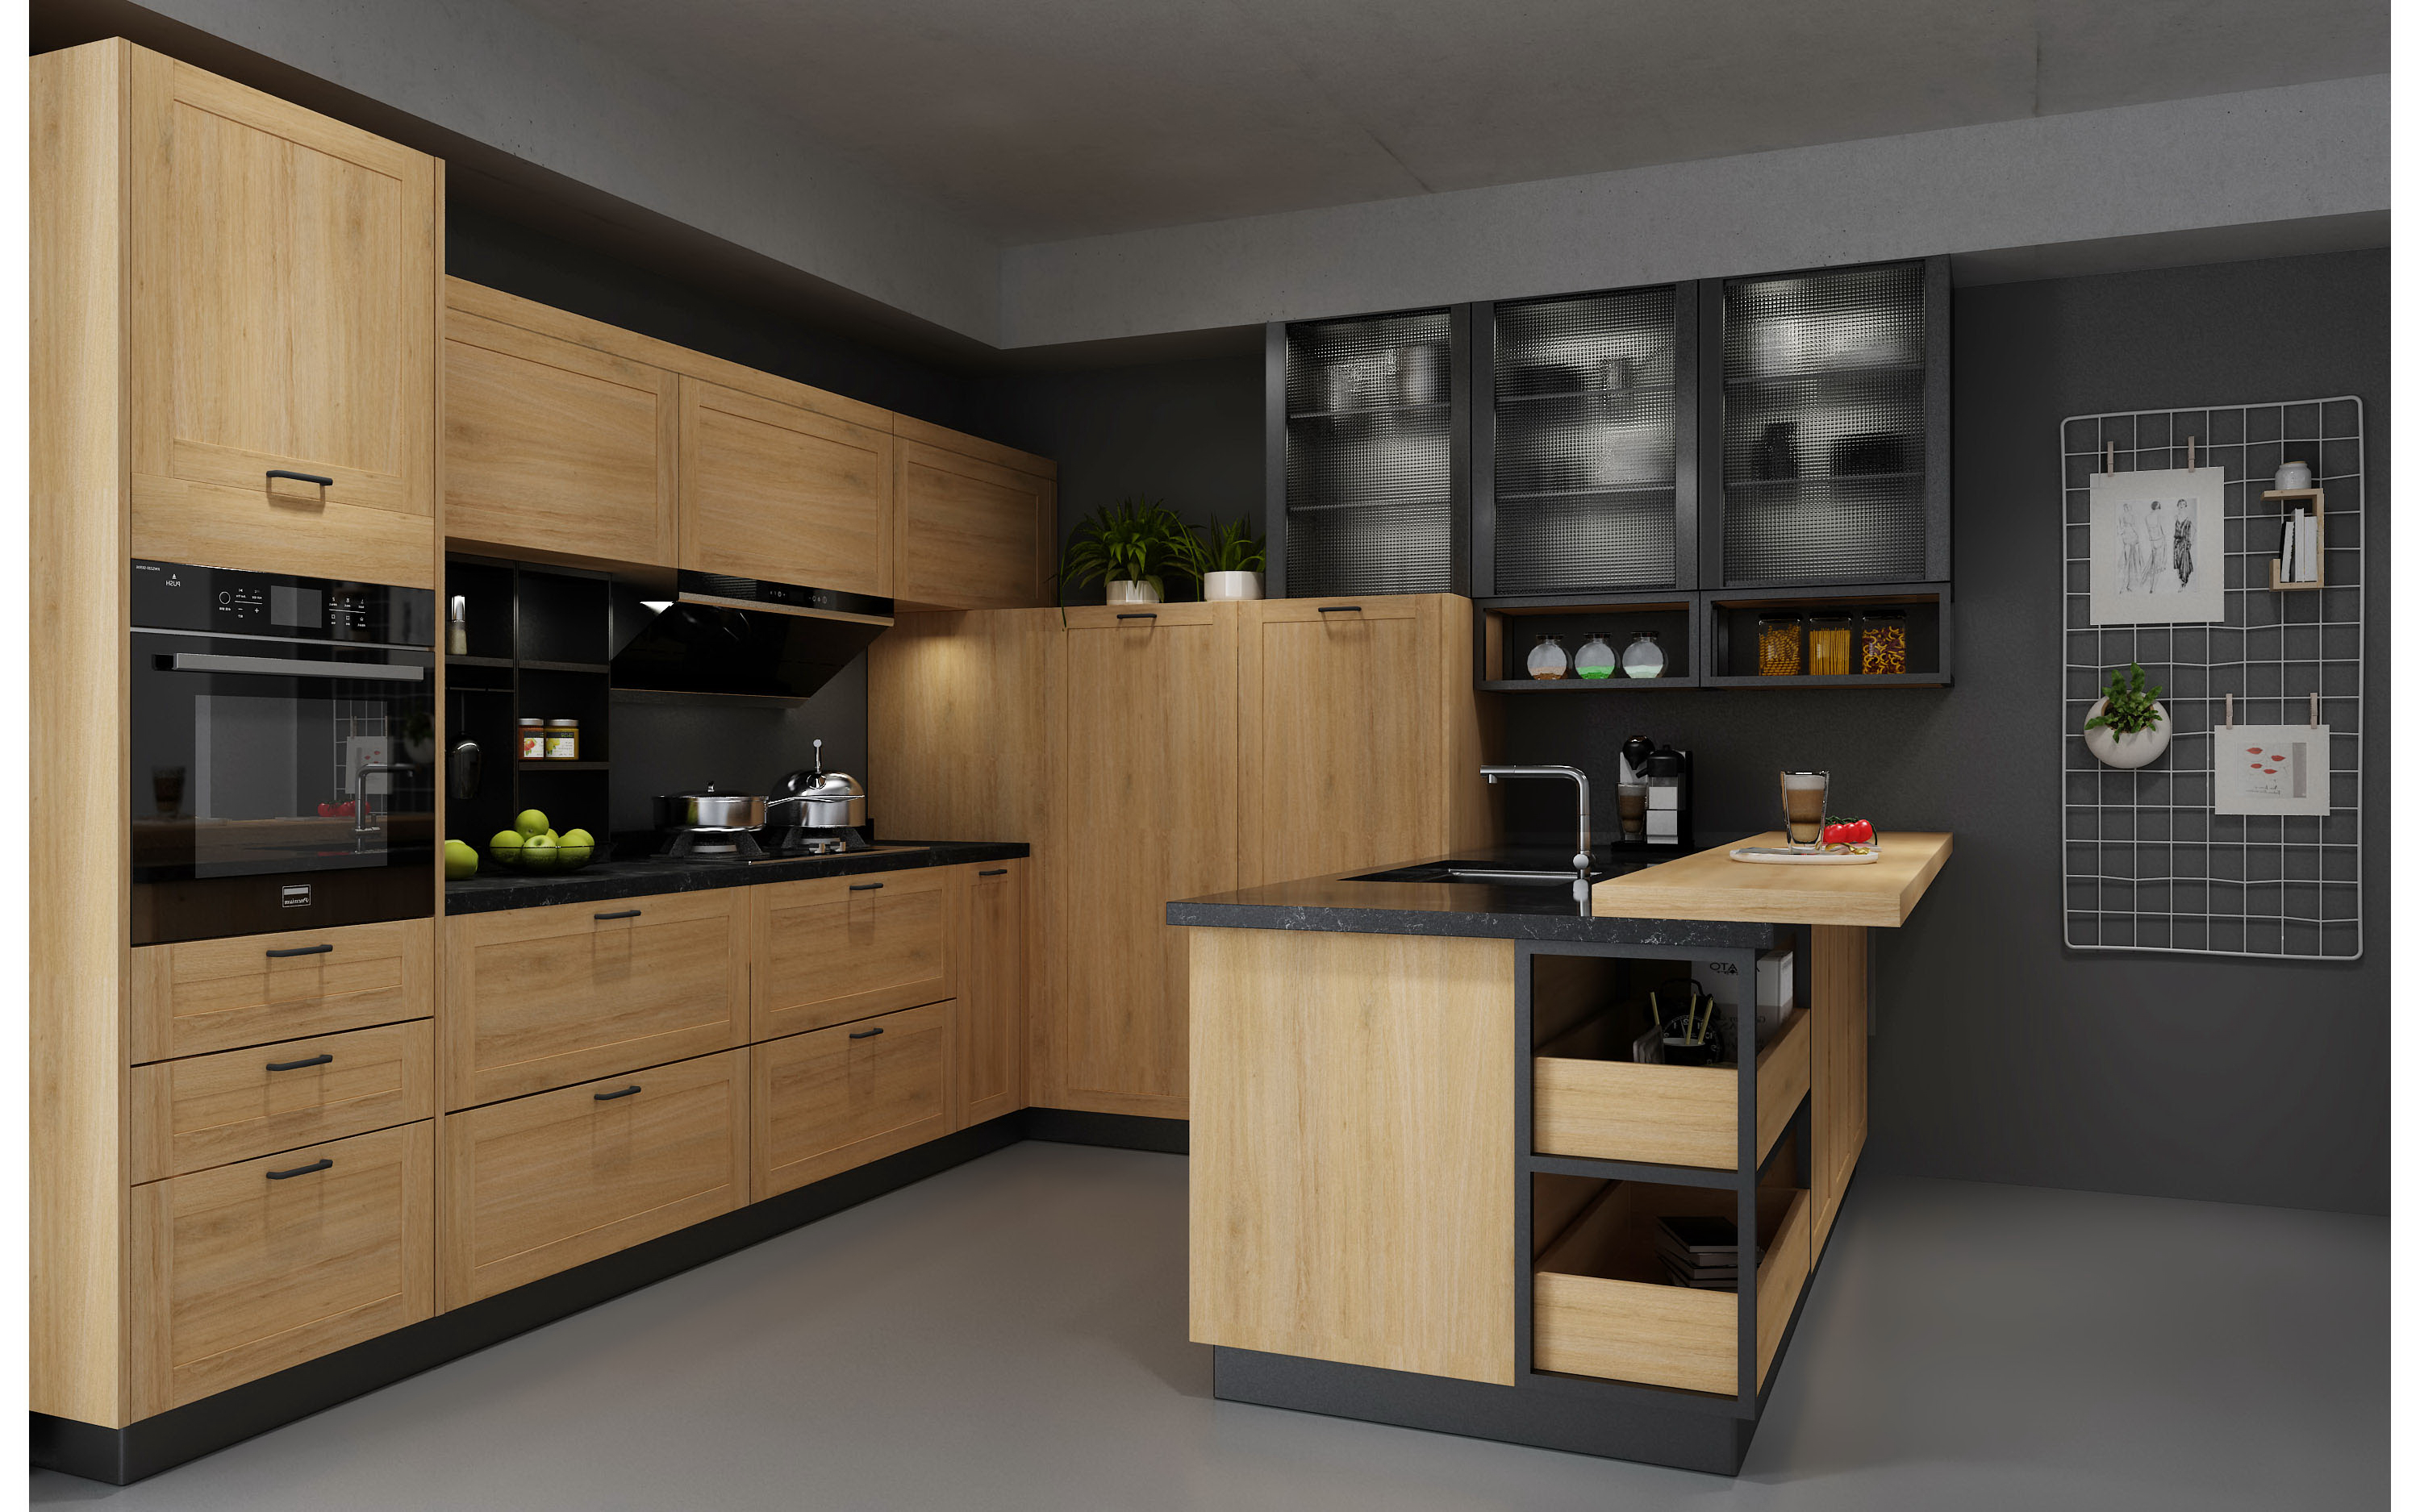 rta kitchen cabinet